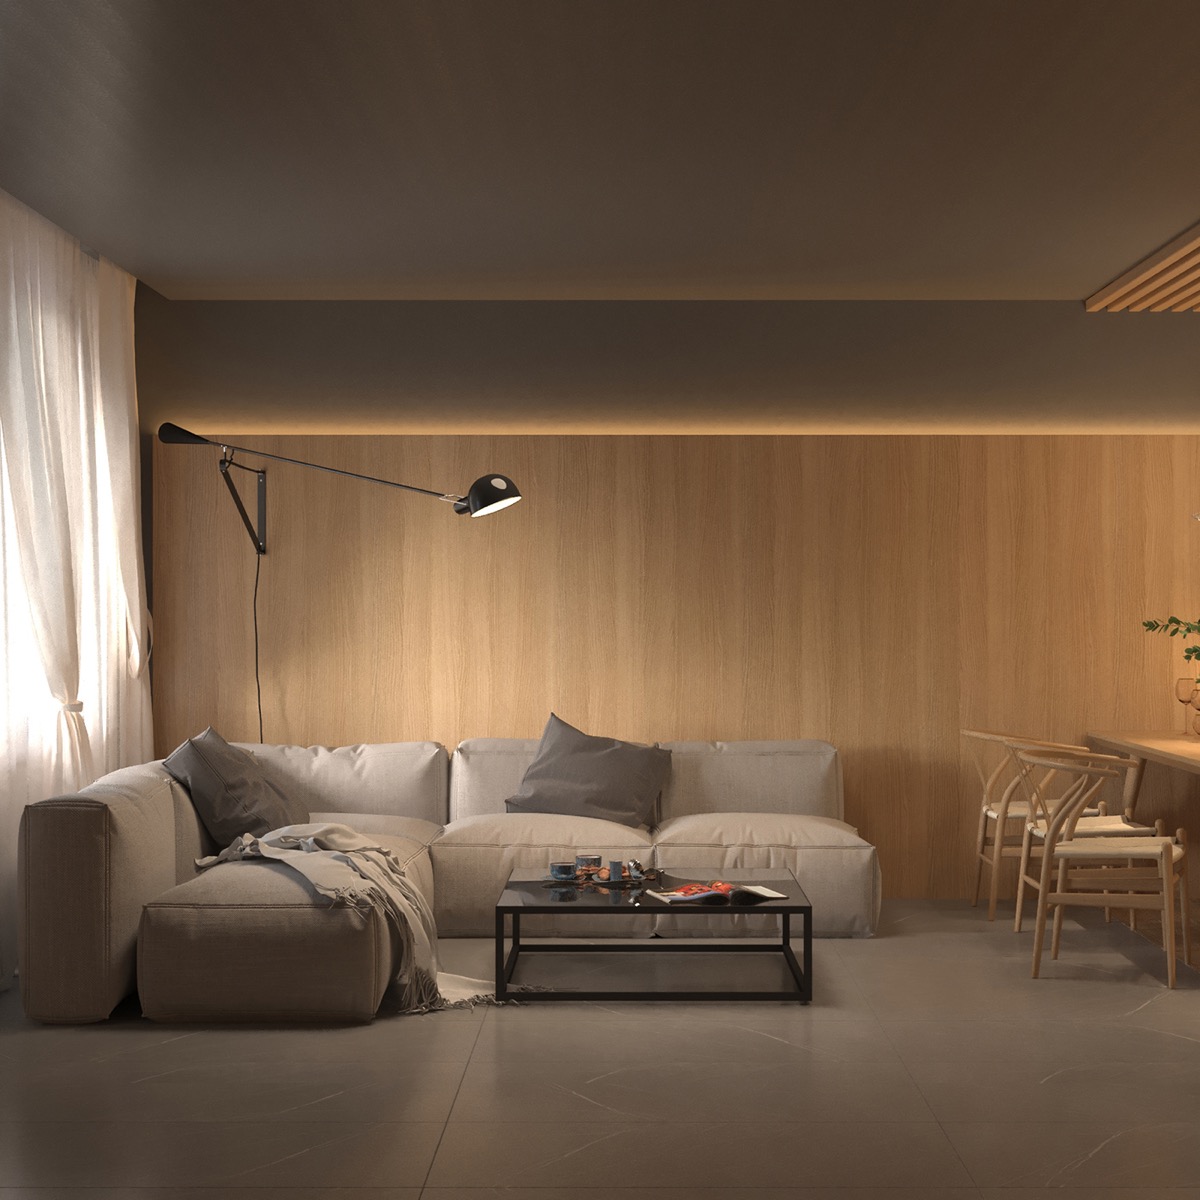 warm interior design with a soft lighting scheme